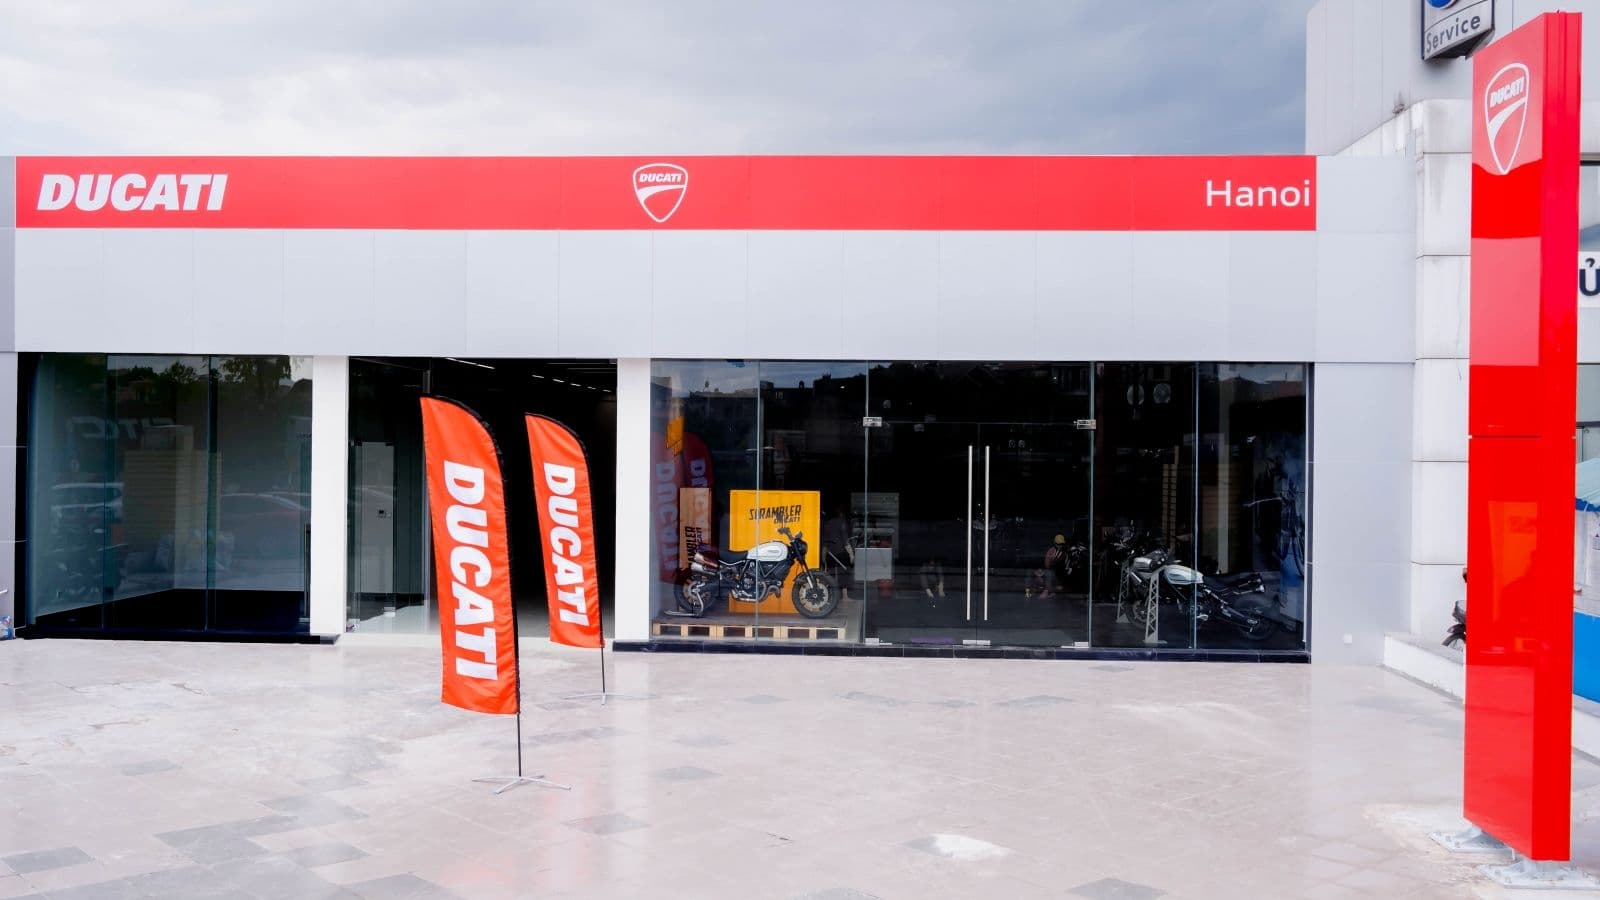 Ducati khai trương showroom và xưởng dịch vụ hoàn toàn mới tại Hà Nội